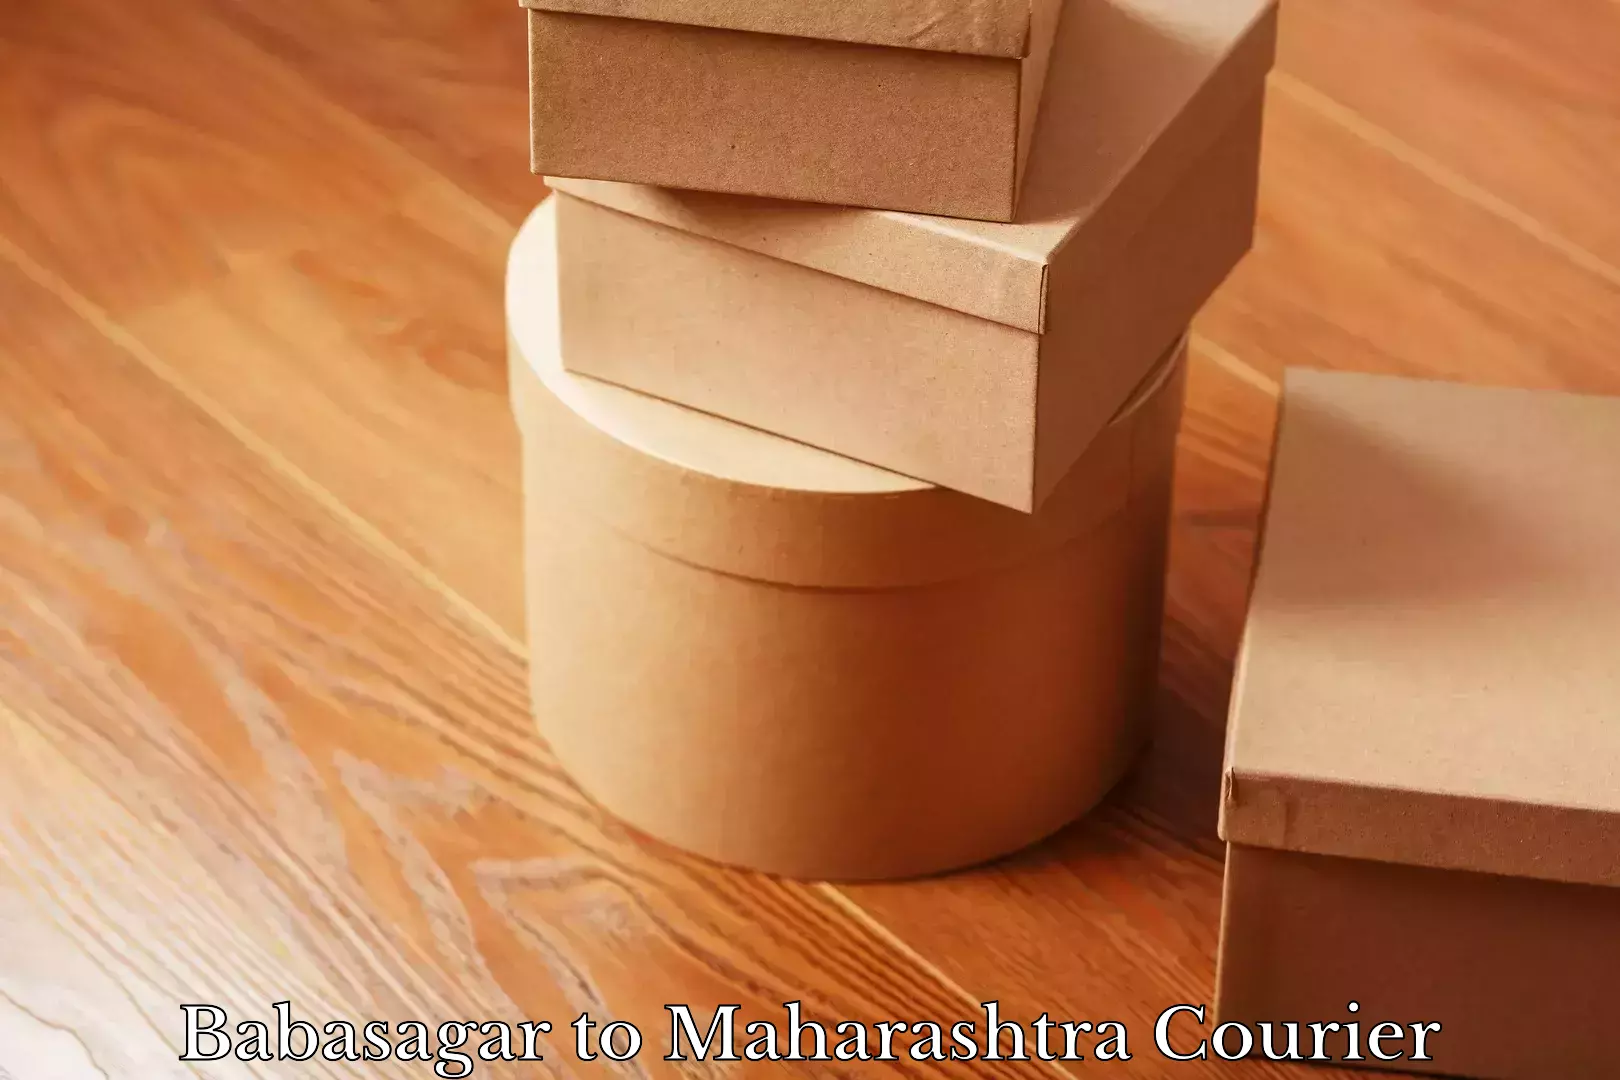 Nationwide shipping coverage Babasagar to Maharashtra